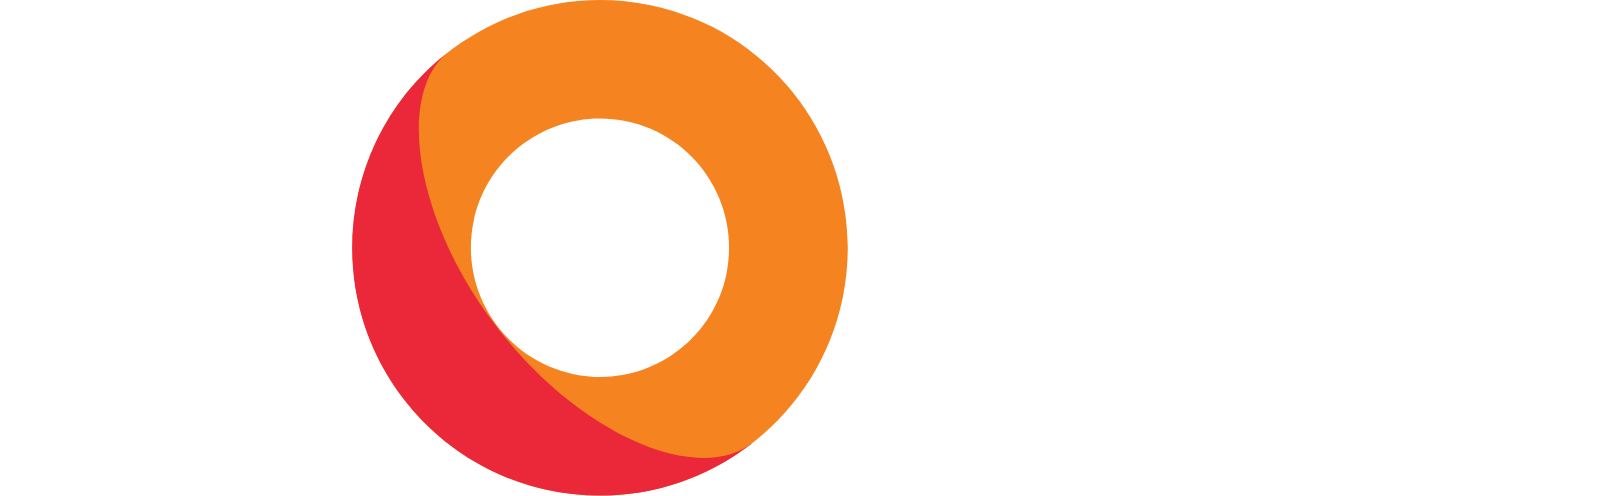 KORE logo large for dark backgrounds (transparent PNG)